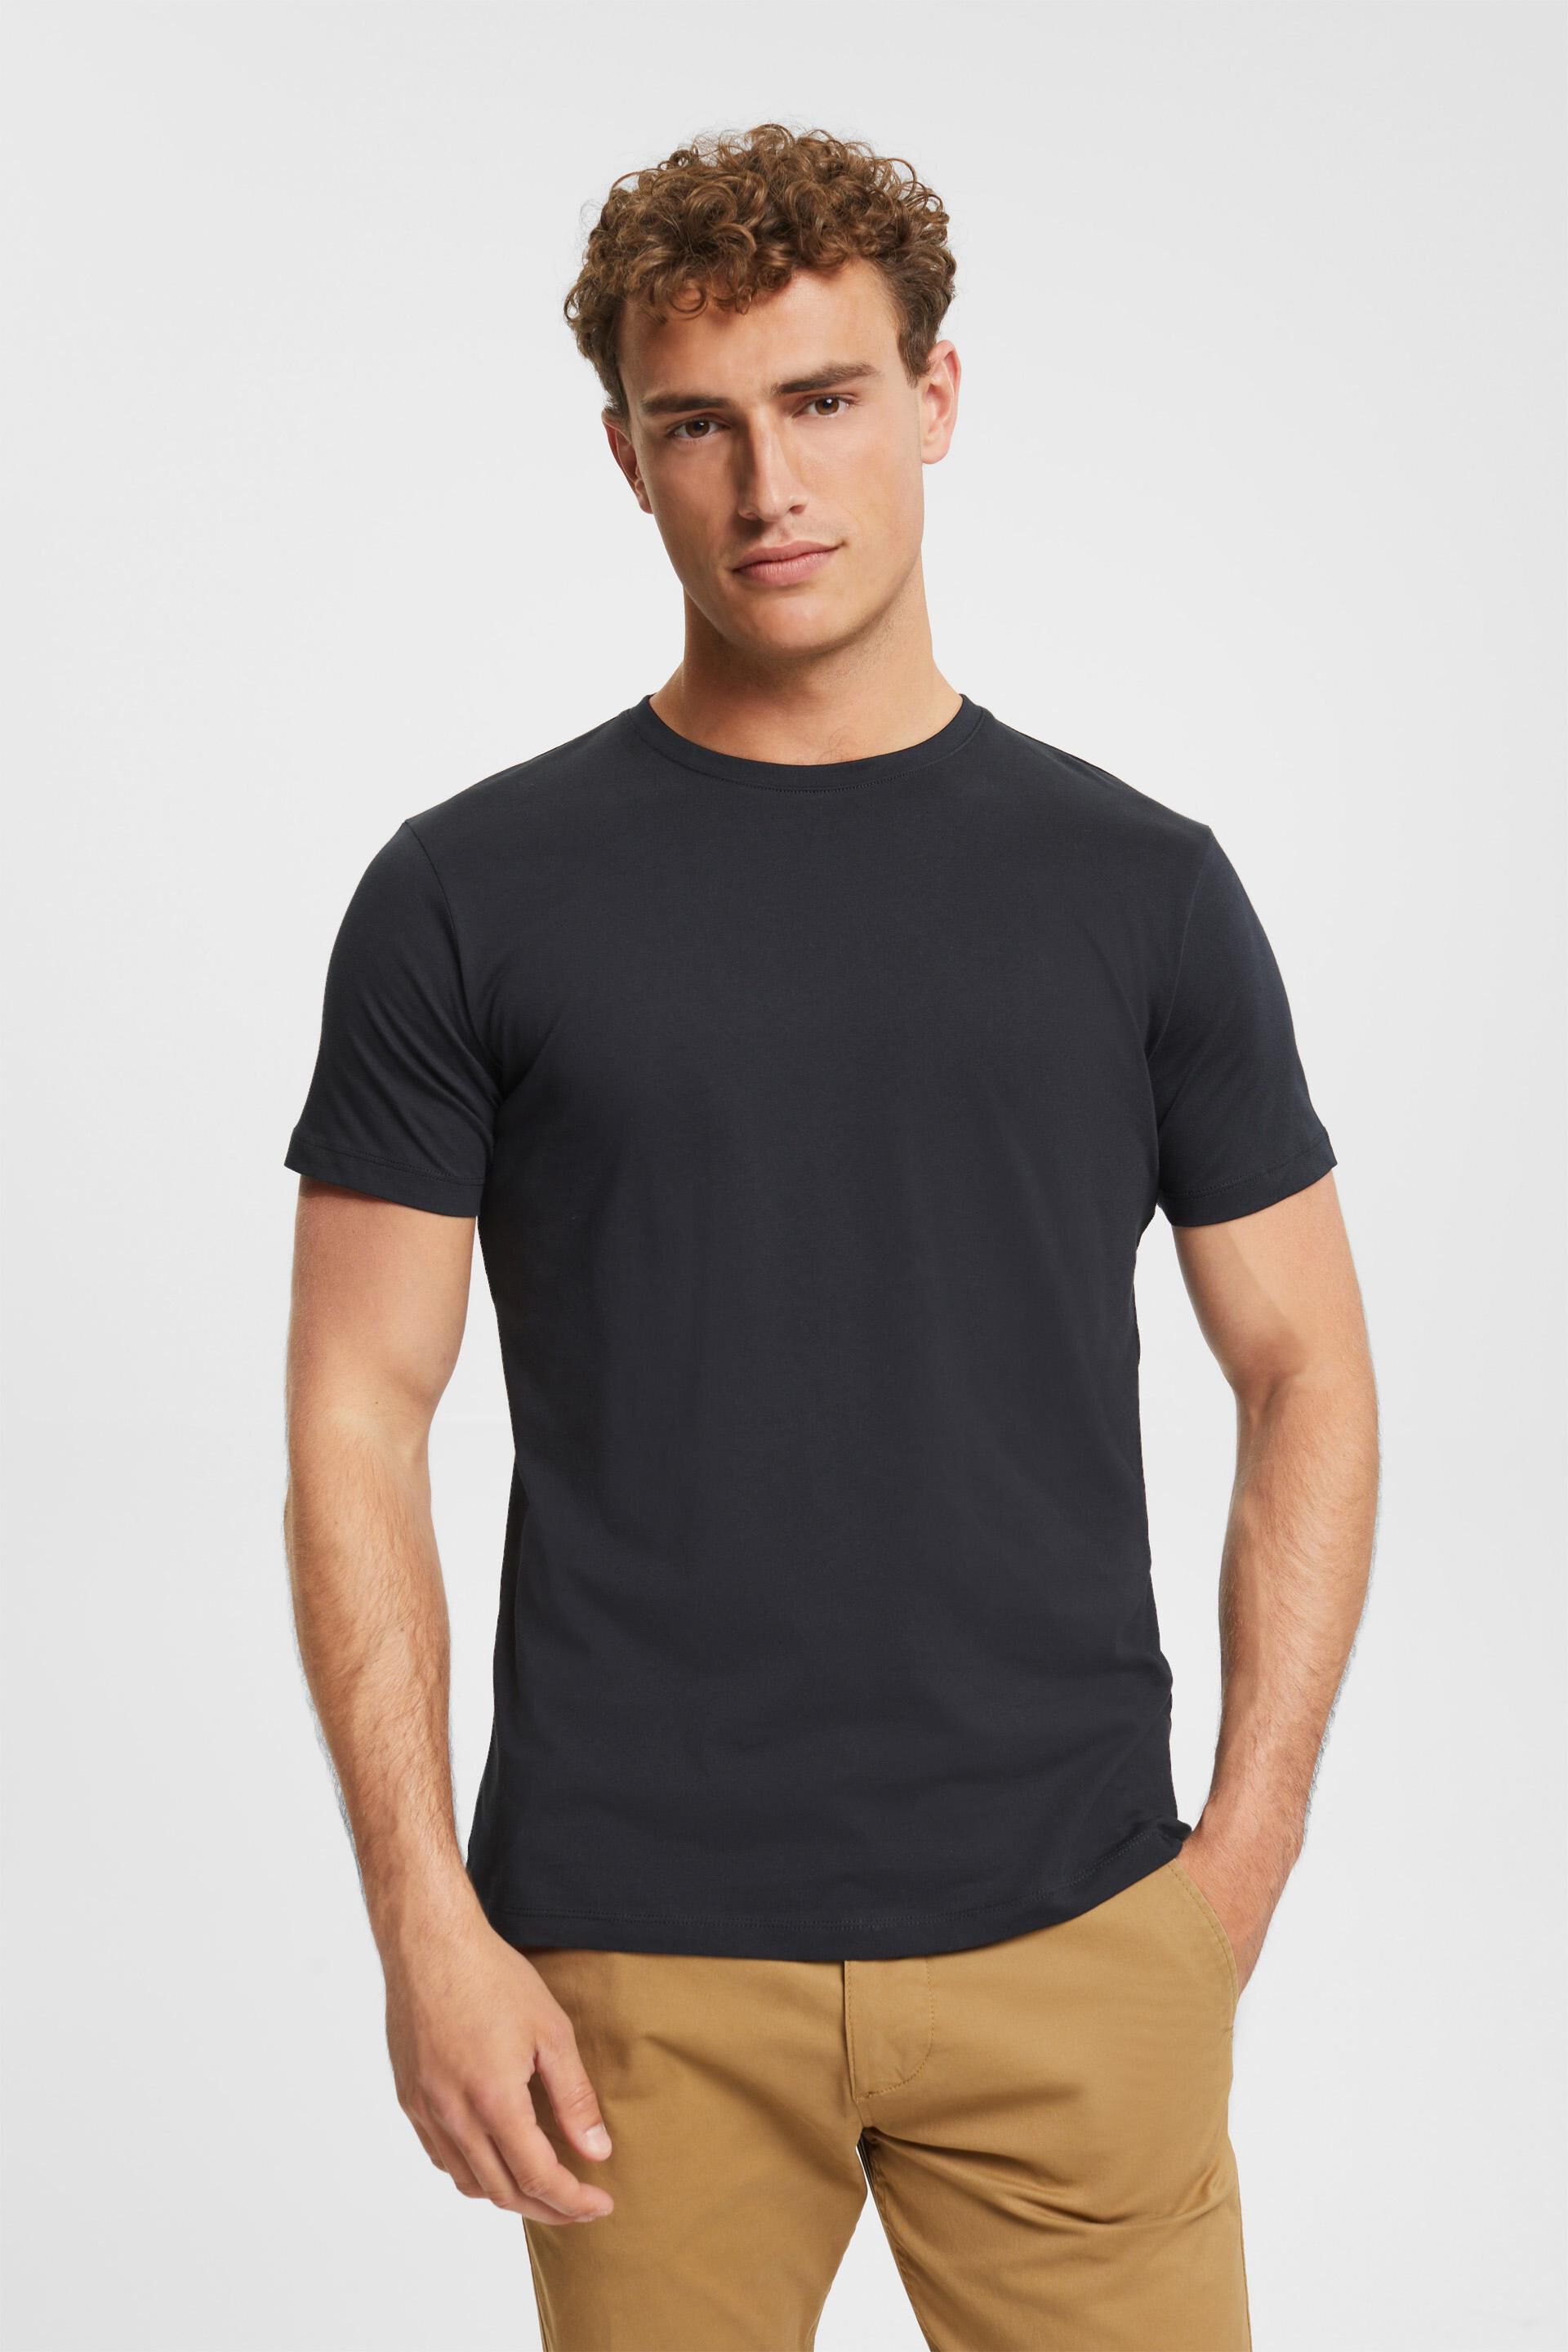 Mode Shirts T-shirts Esprit T-shirt rood-zwart gestreept patroon casual uitstraling 